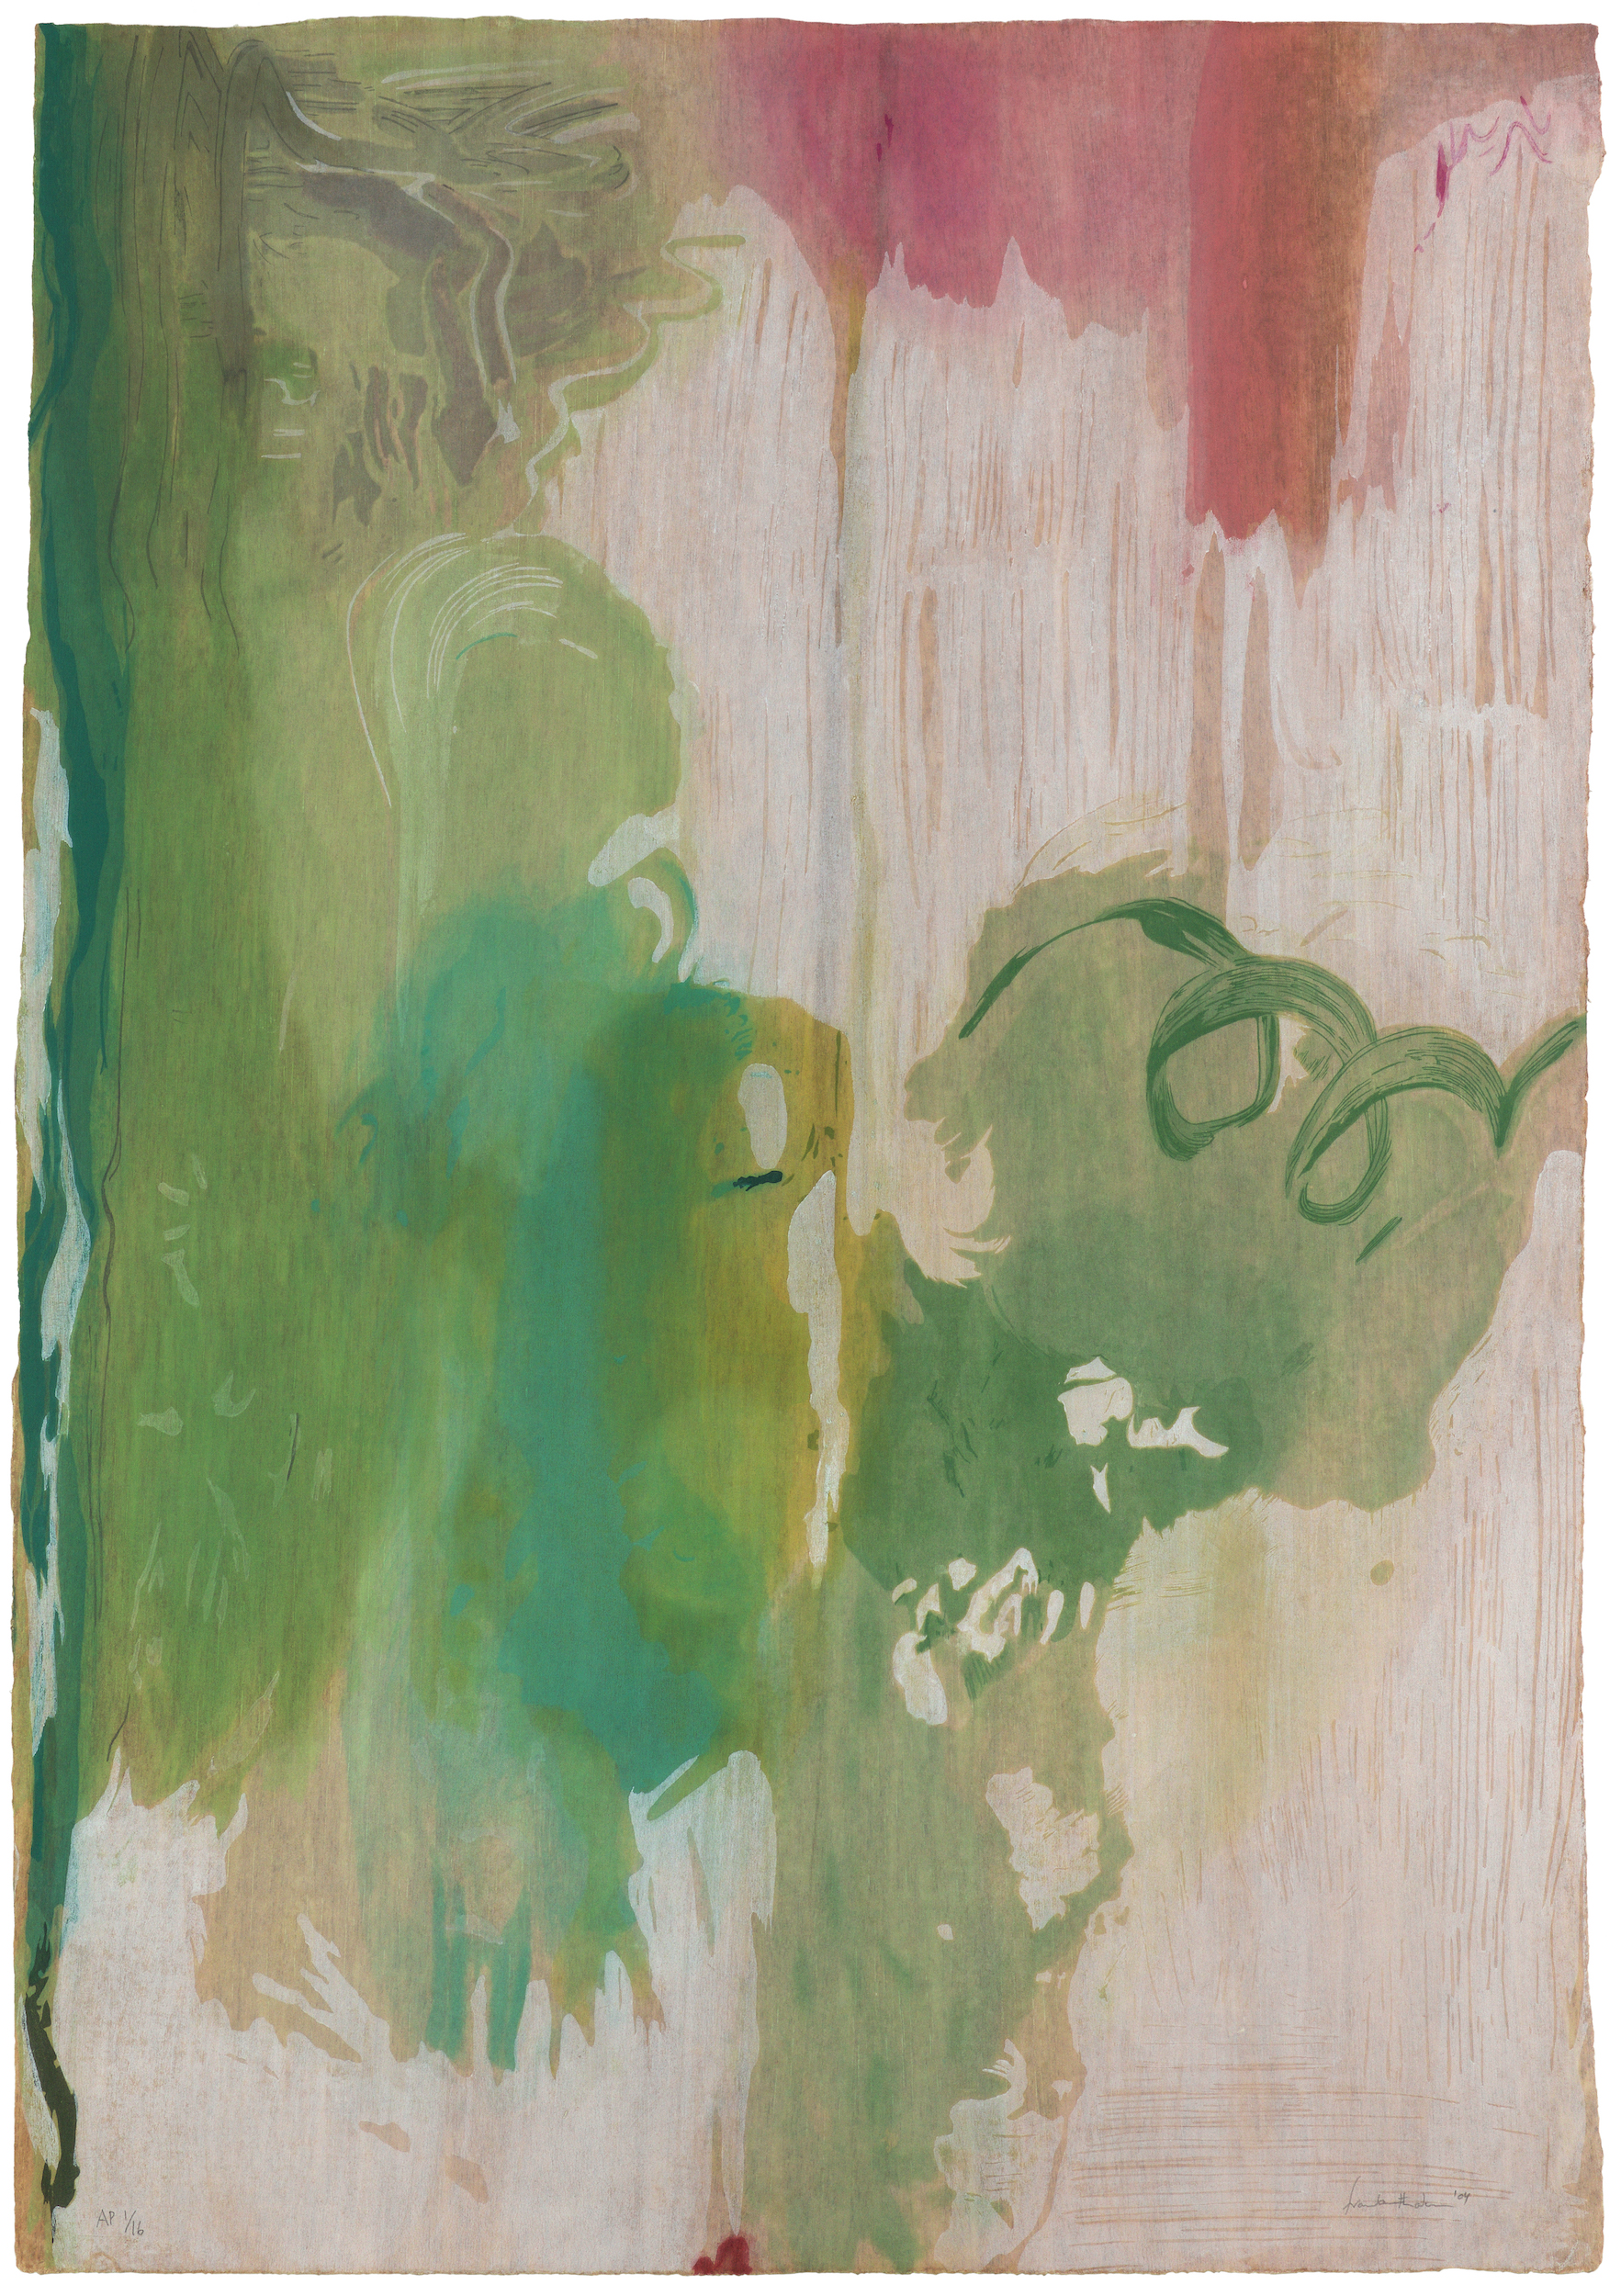 雪松 by Helen Frankenthaler - 2004 - 95.3 x 66 cm 